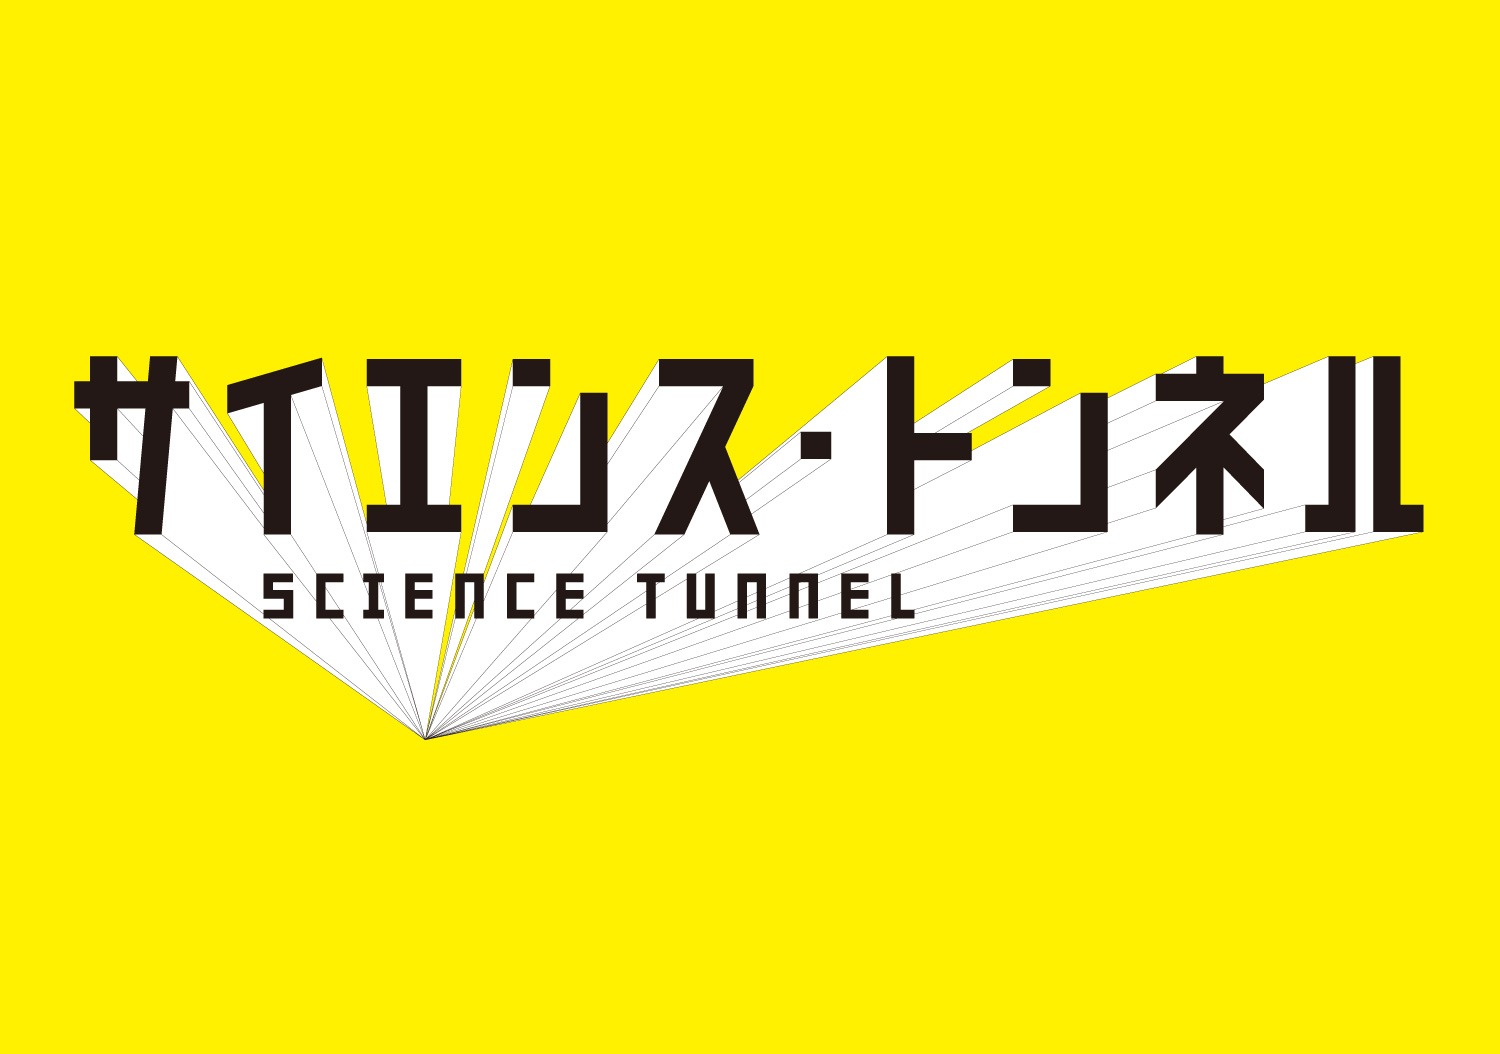 サイエンス・トンネル｜日本科学未来館_1